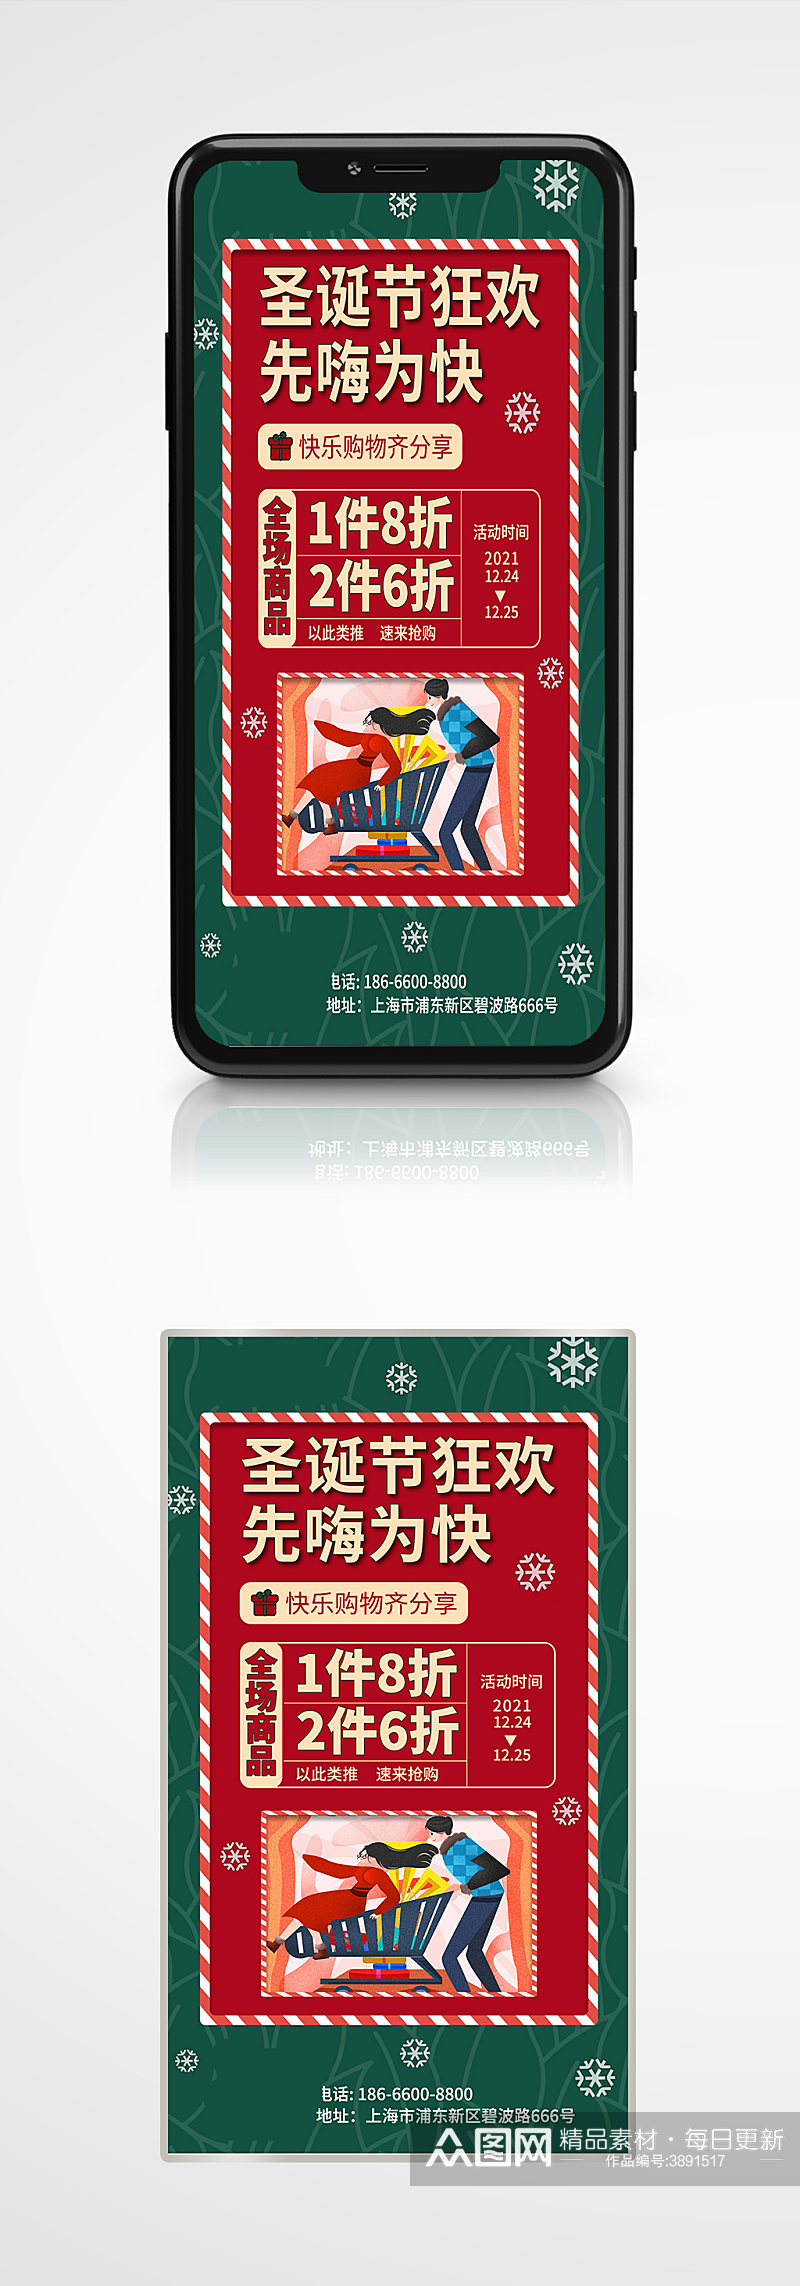 简约喜庆双旦圣诞节狂欢节促销手机海报素材